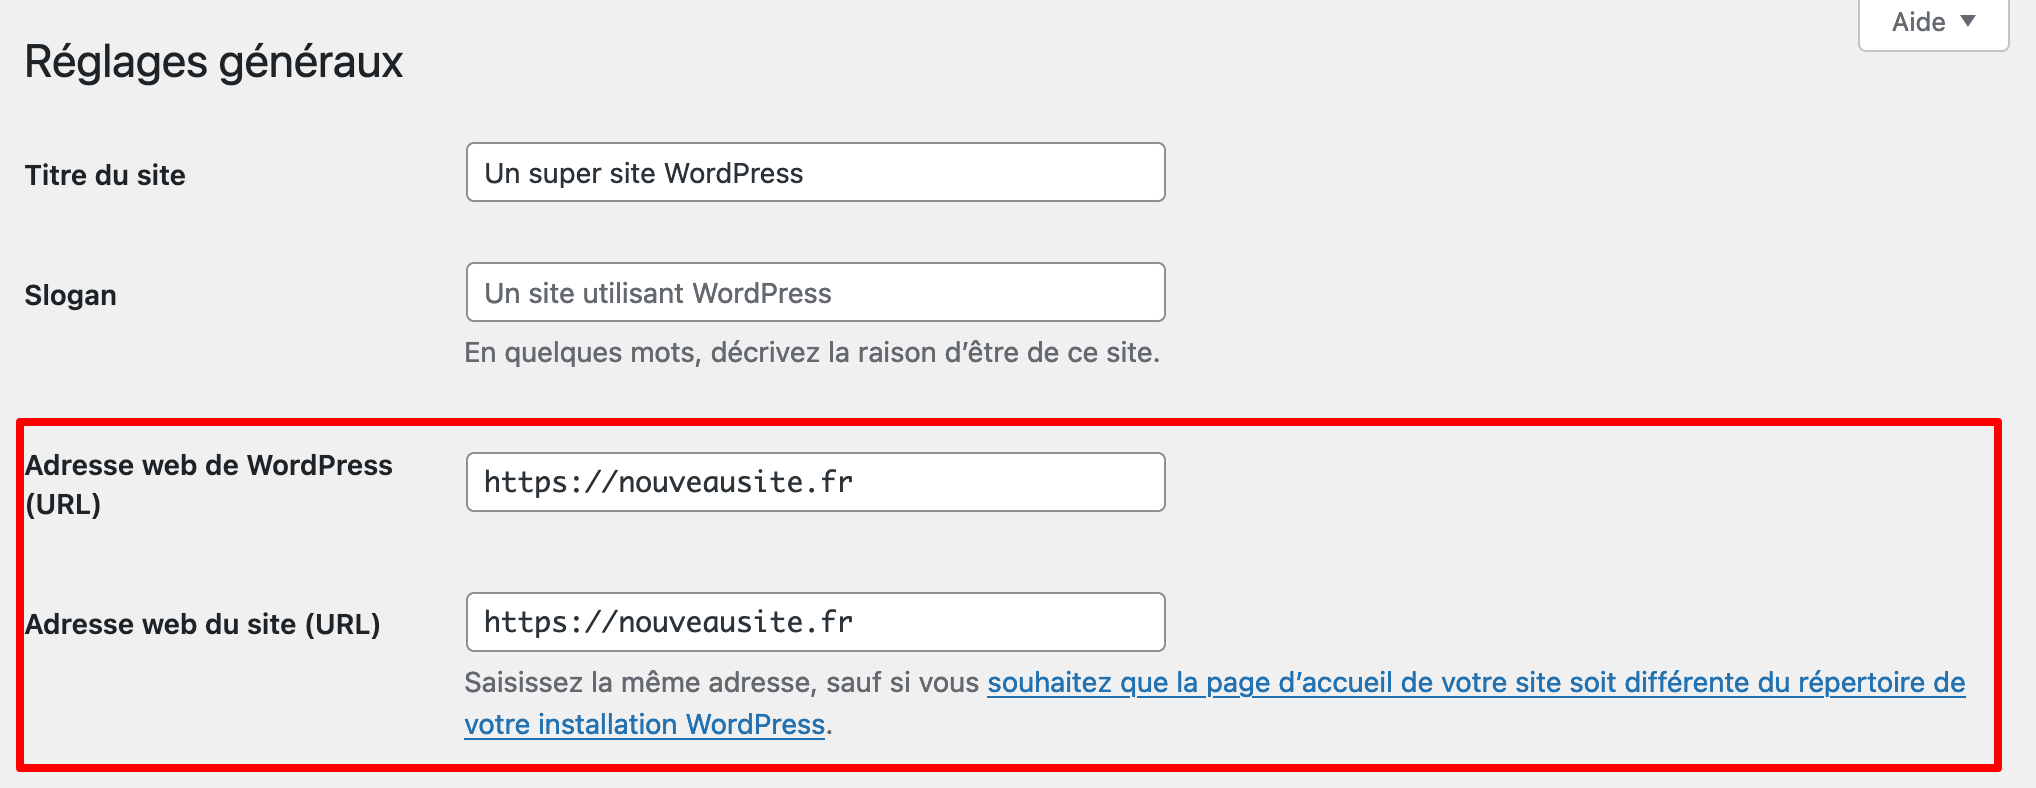 Changer l'URL d'un site WordPress est possible via l'interface d'administration du CMS.